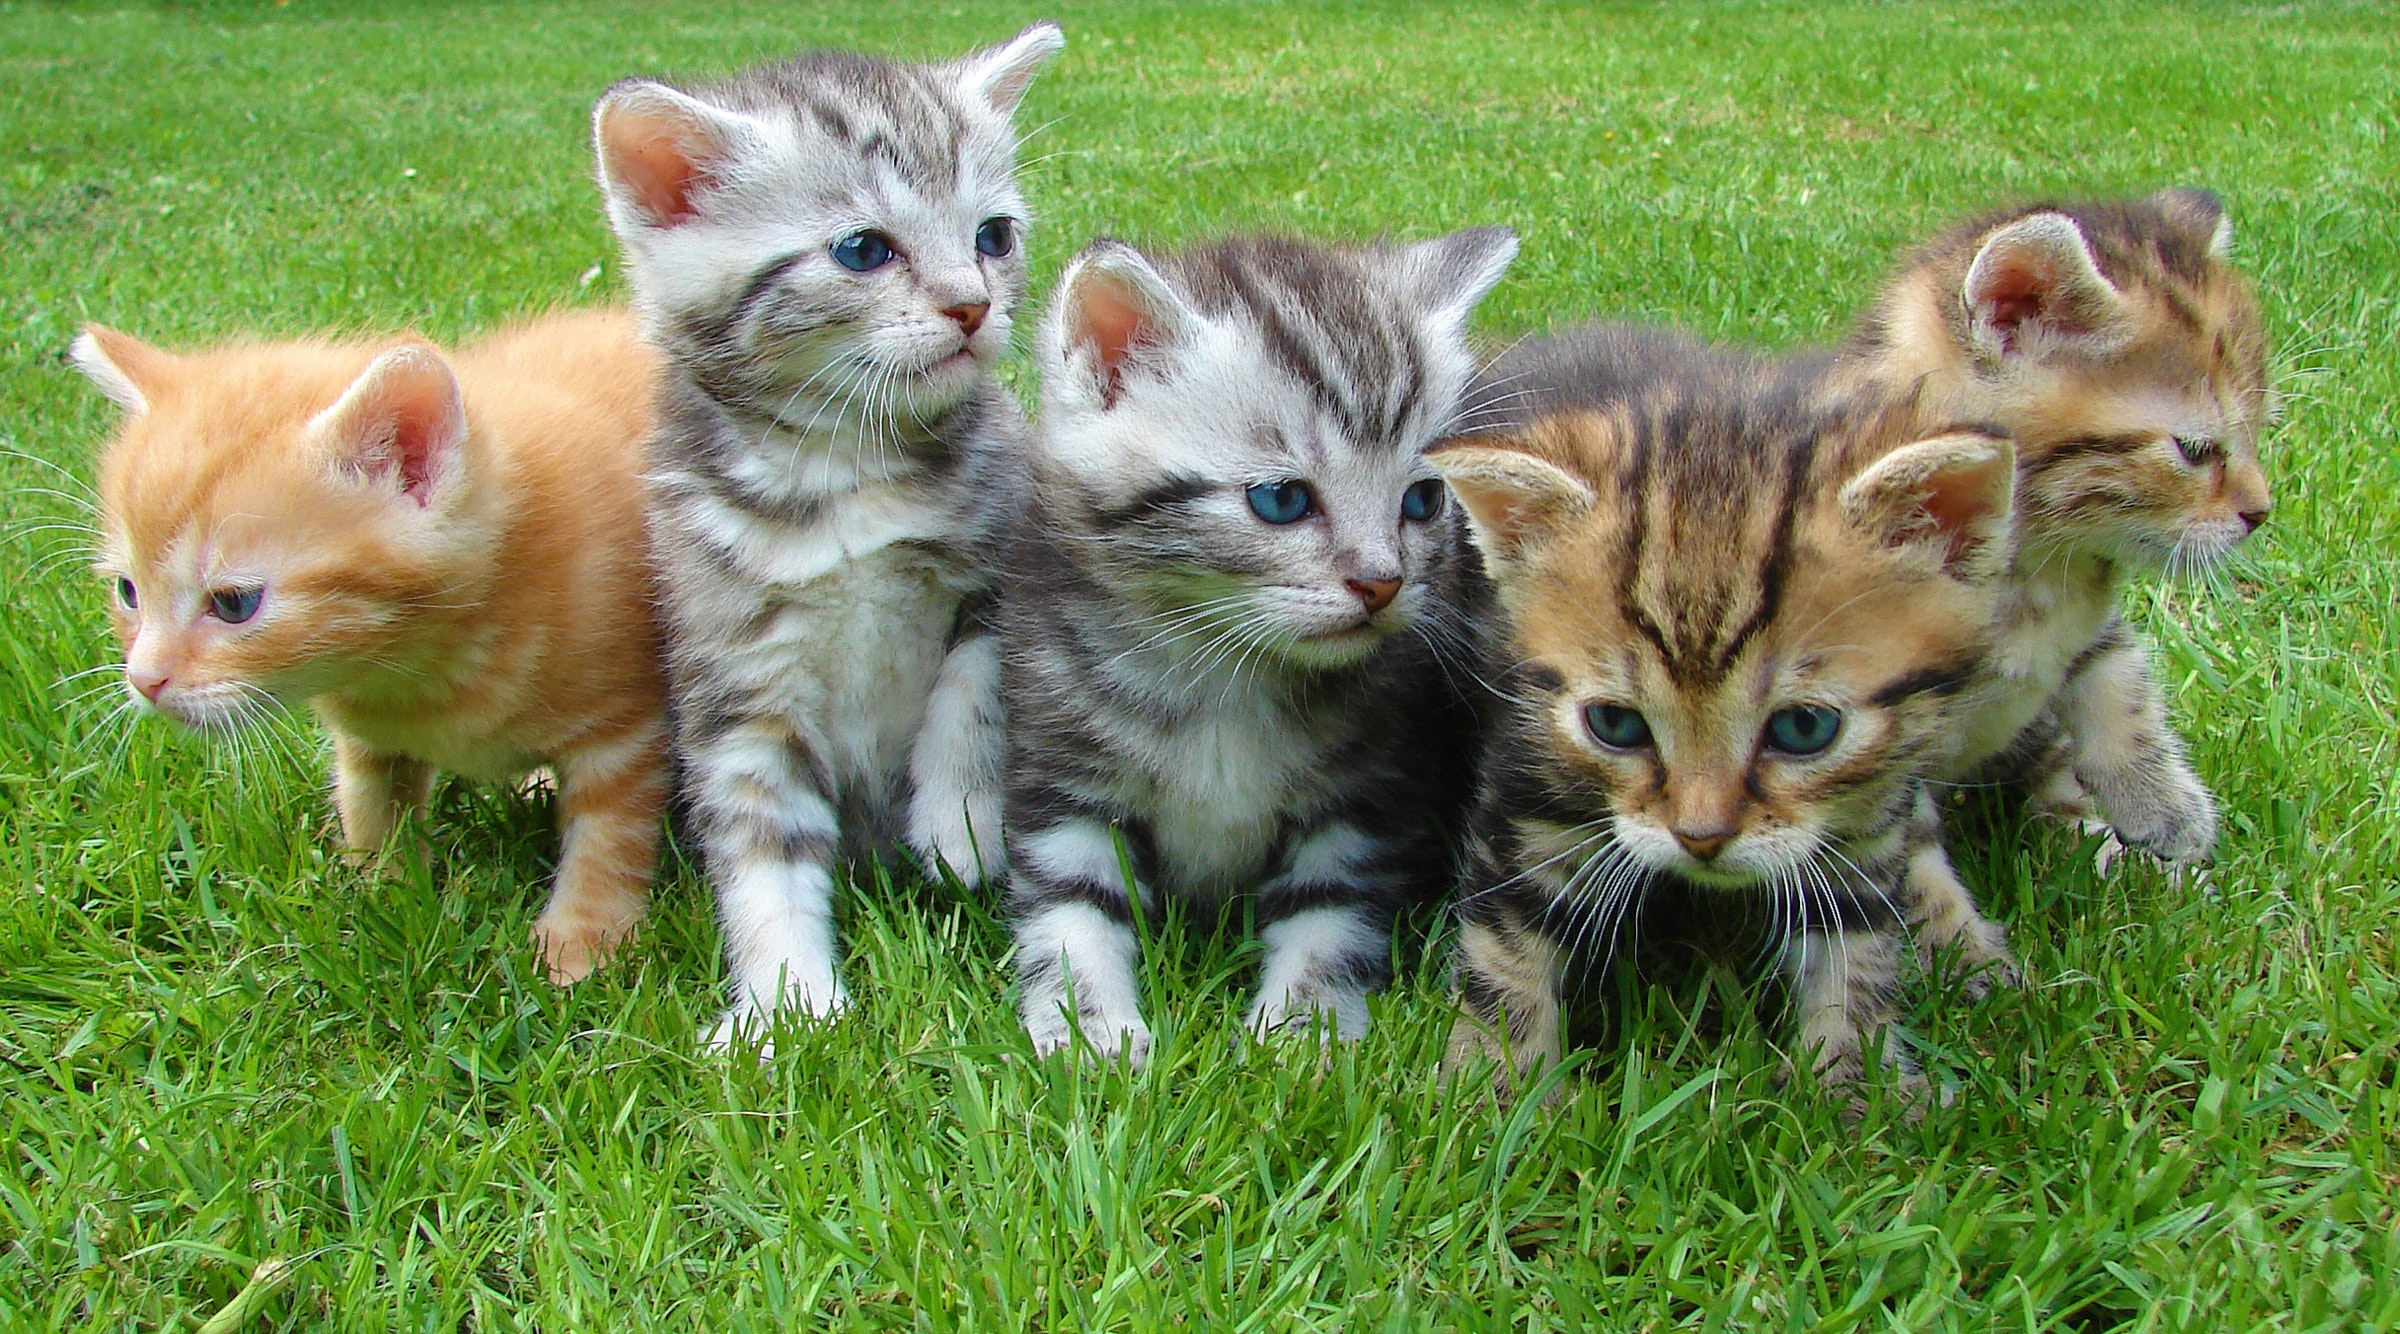 Kittens samen lekker in het gras aan het spelen